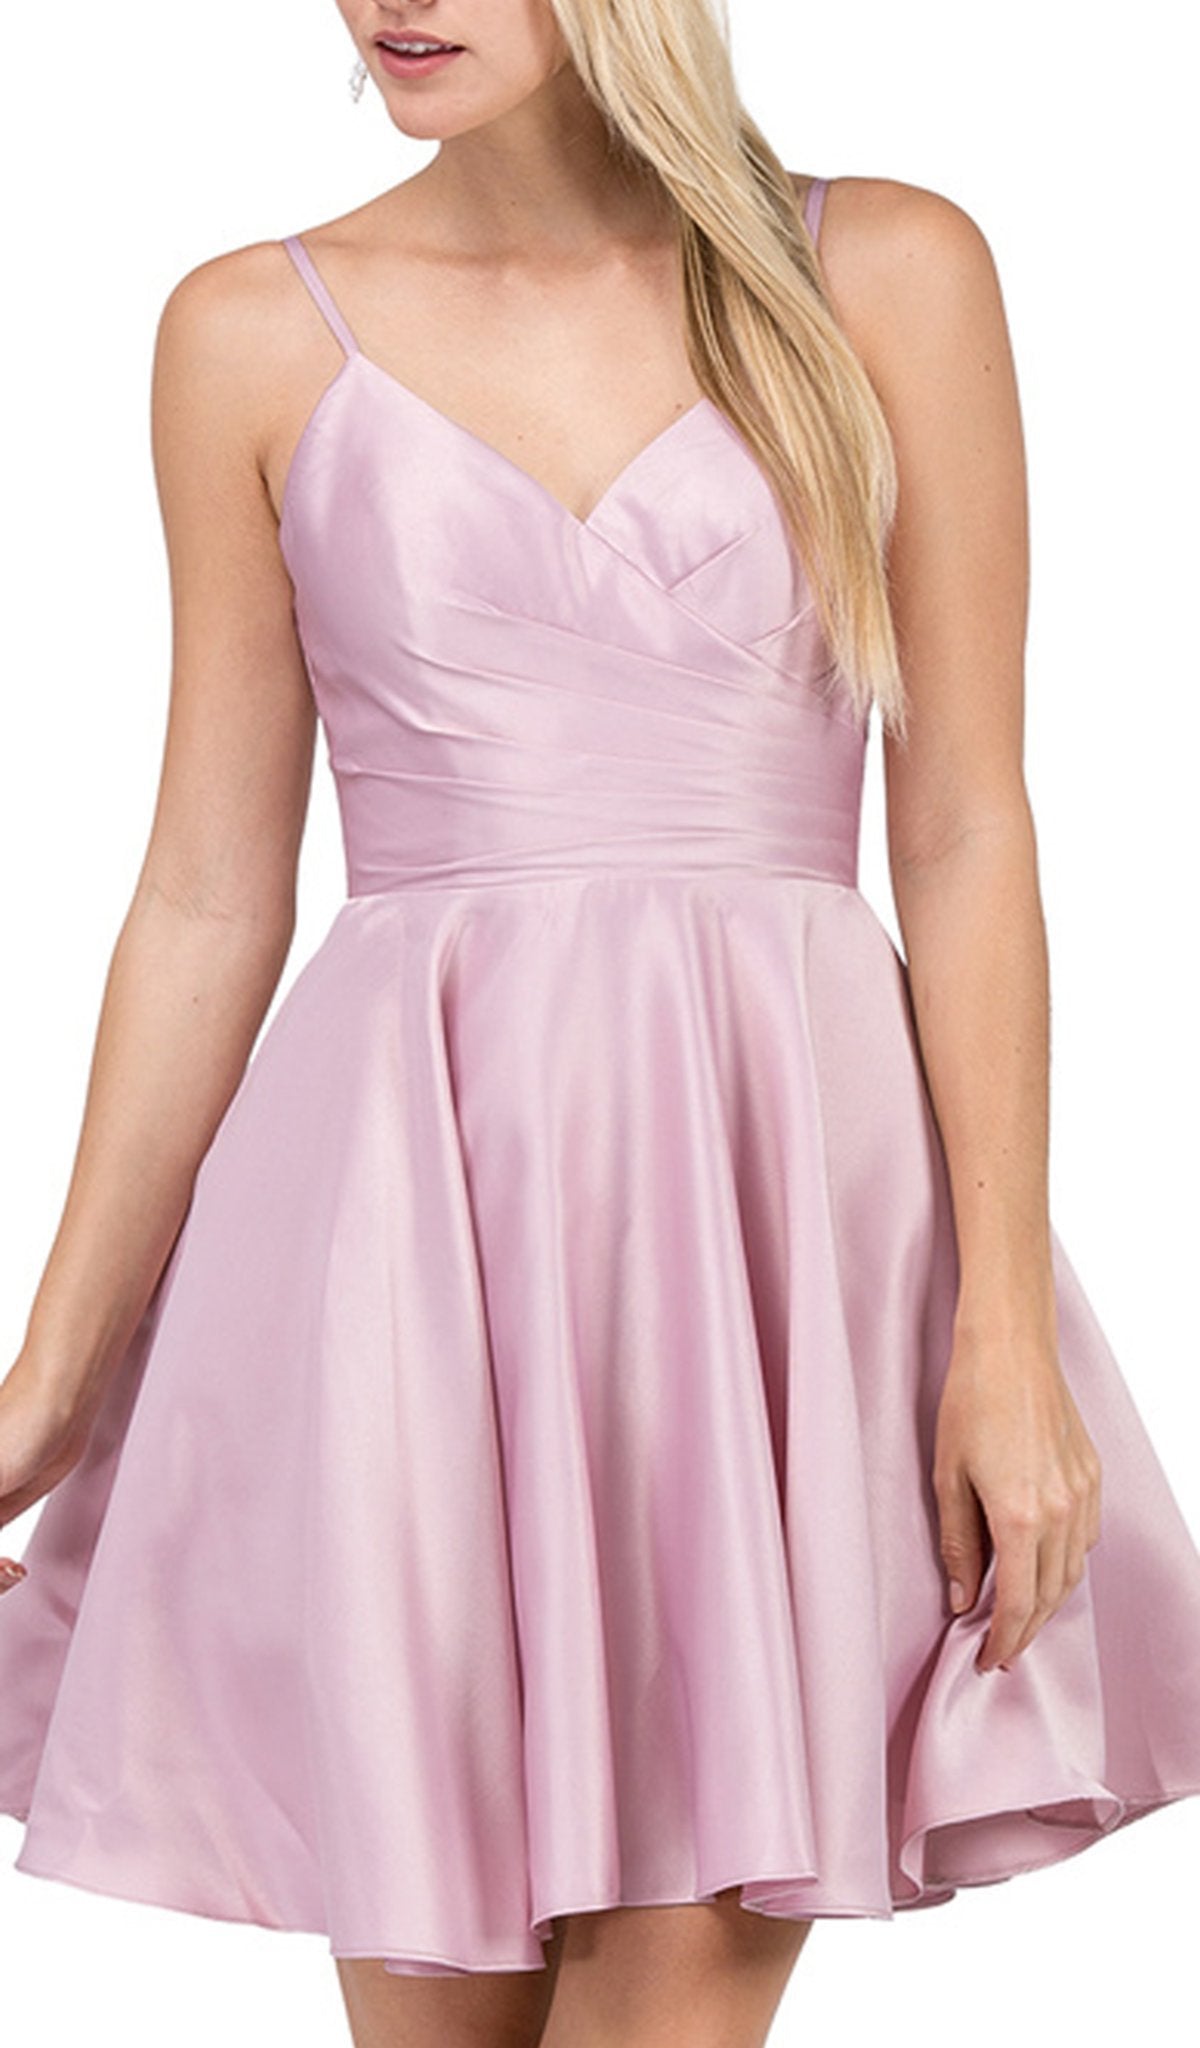 Dancing Queen - 3059 Sleek Pleated Surplice Homecoming Dress In Pink